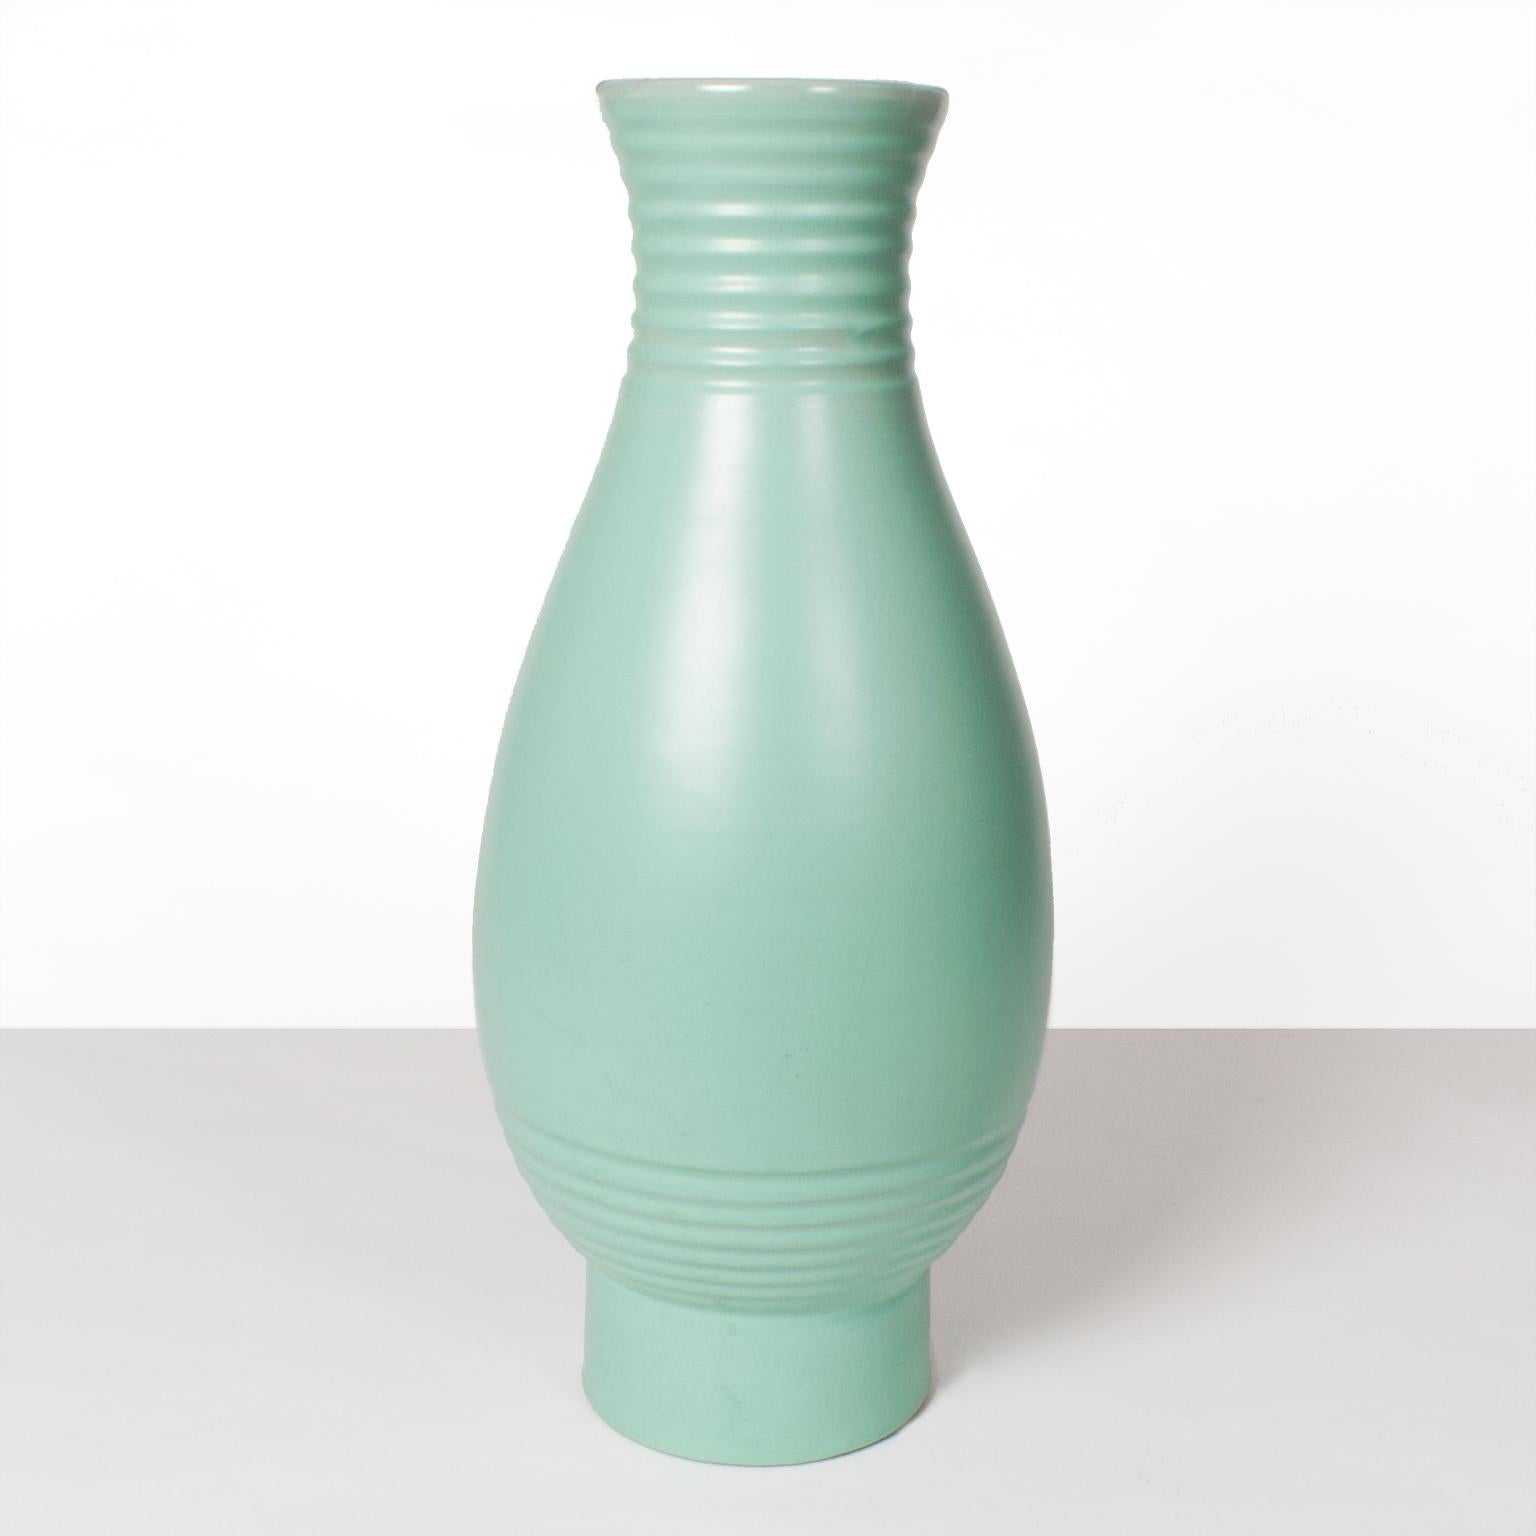 Skandinavische Moderne, schwedische Art-déco-Vase des Künstlers Ewald Dahlskog in zartgrüner Glasur, hergestellt bei Bo Fajans.
 
Abmessungen: 19